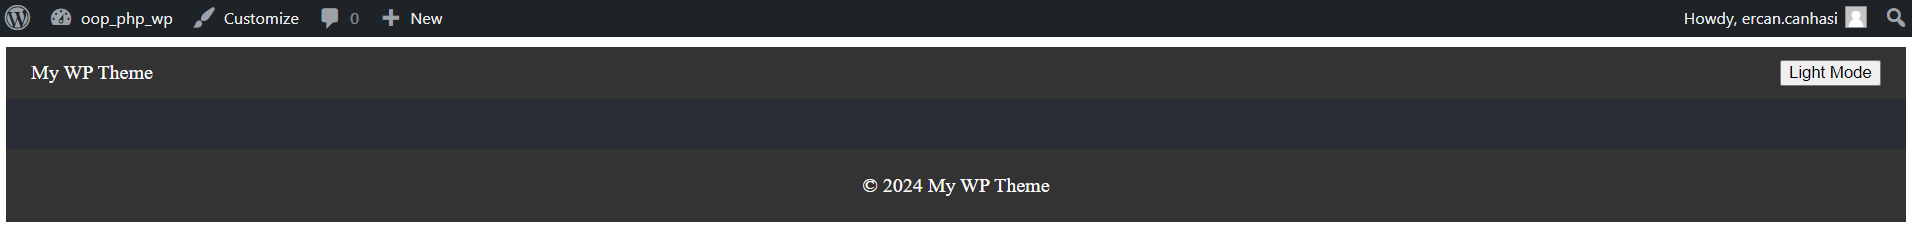 A página inicial mostrando o tema WordPress baseado em React, incluindo cabeçalho e rodapé.